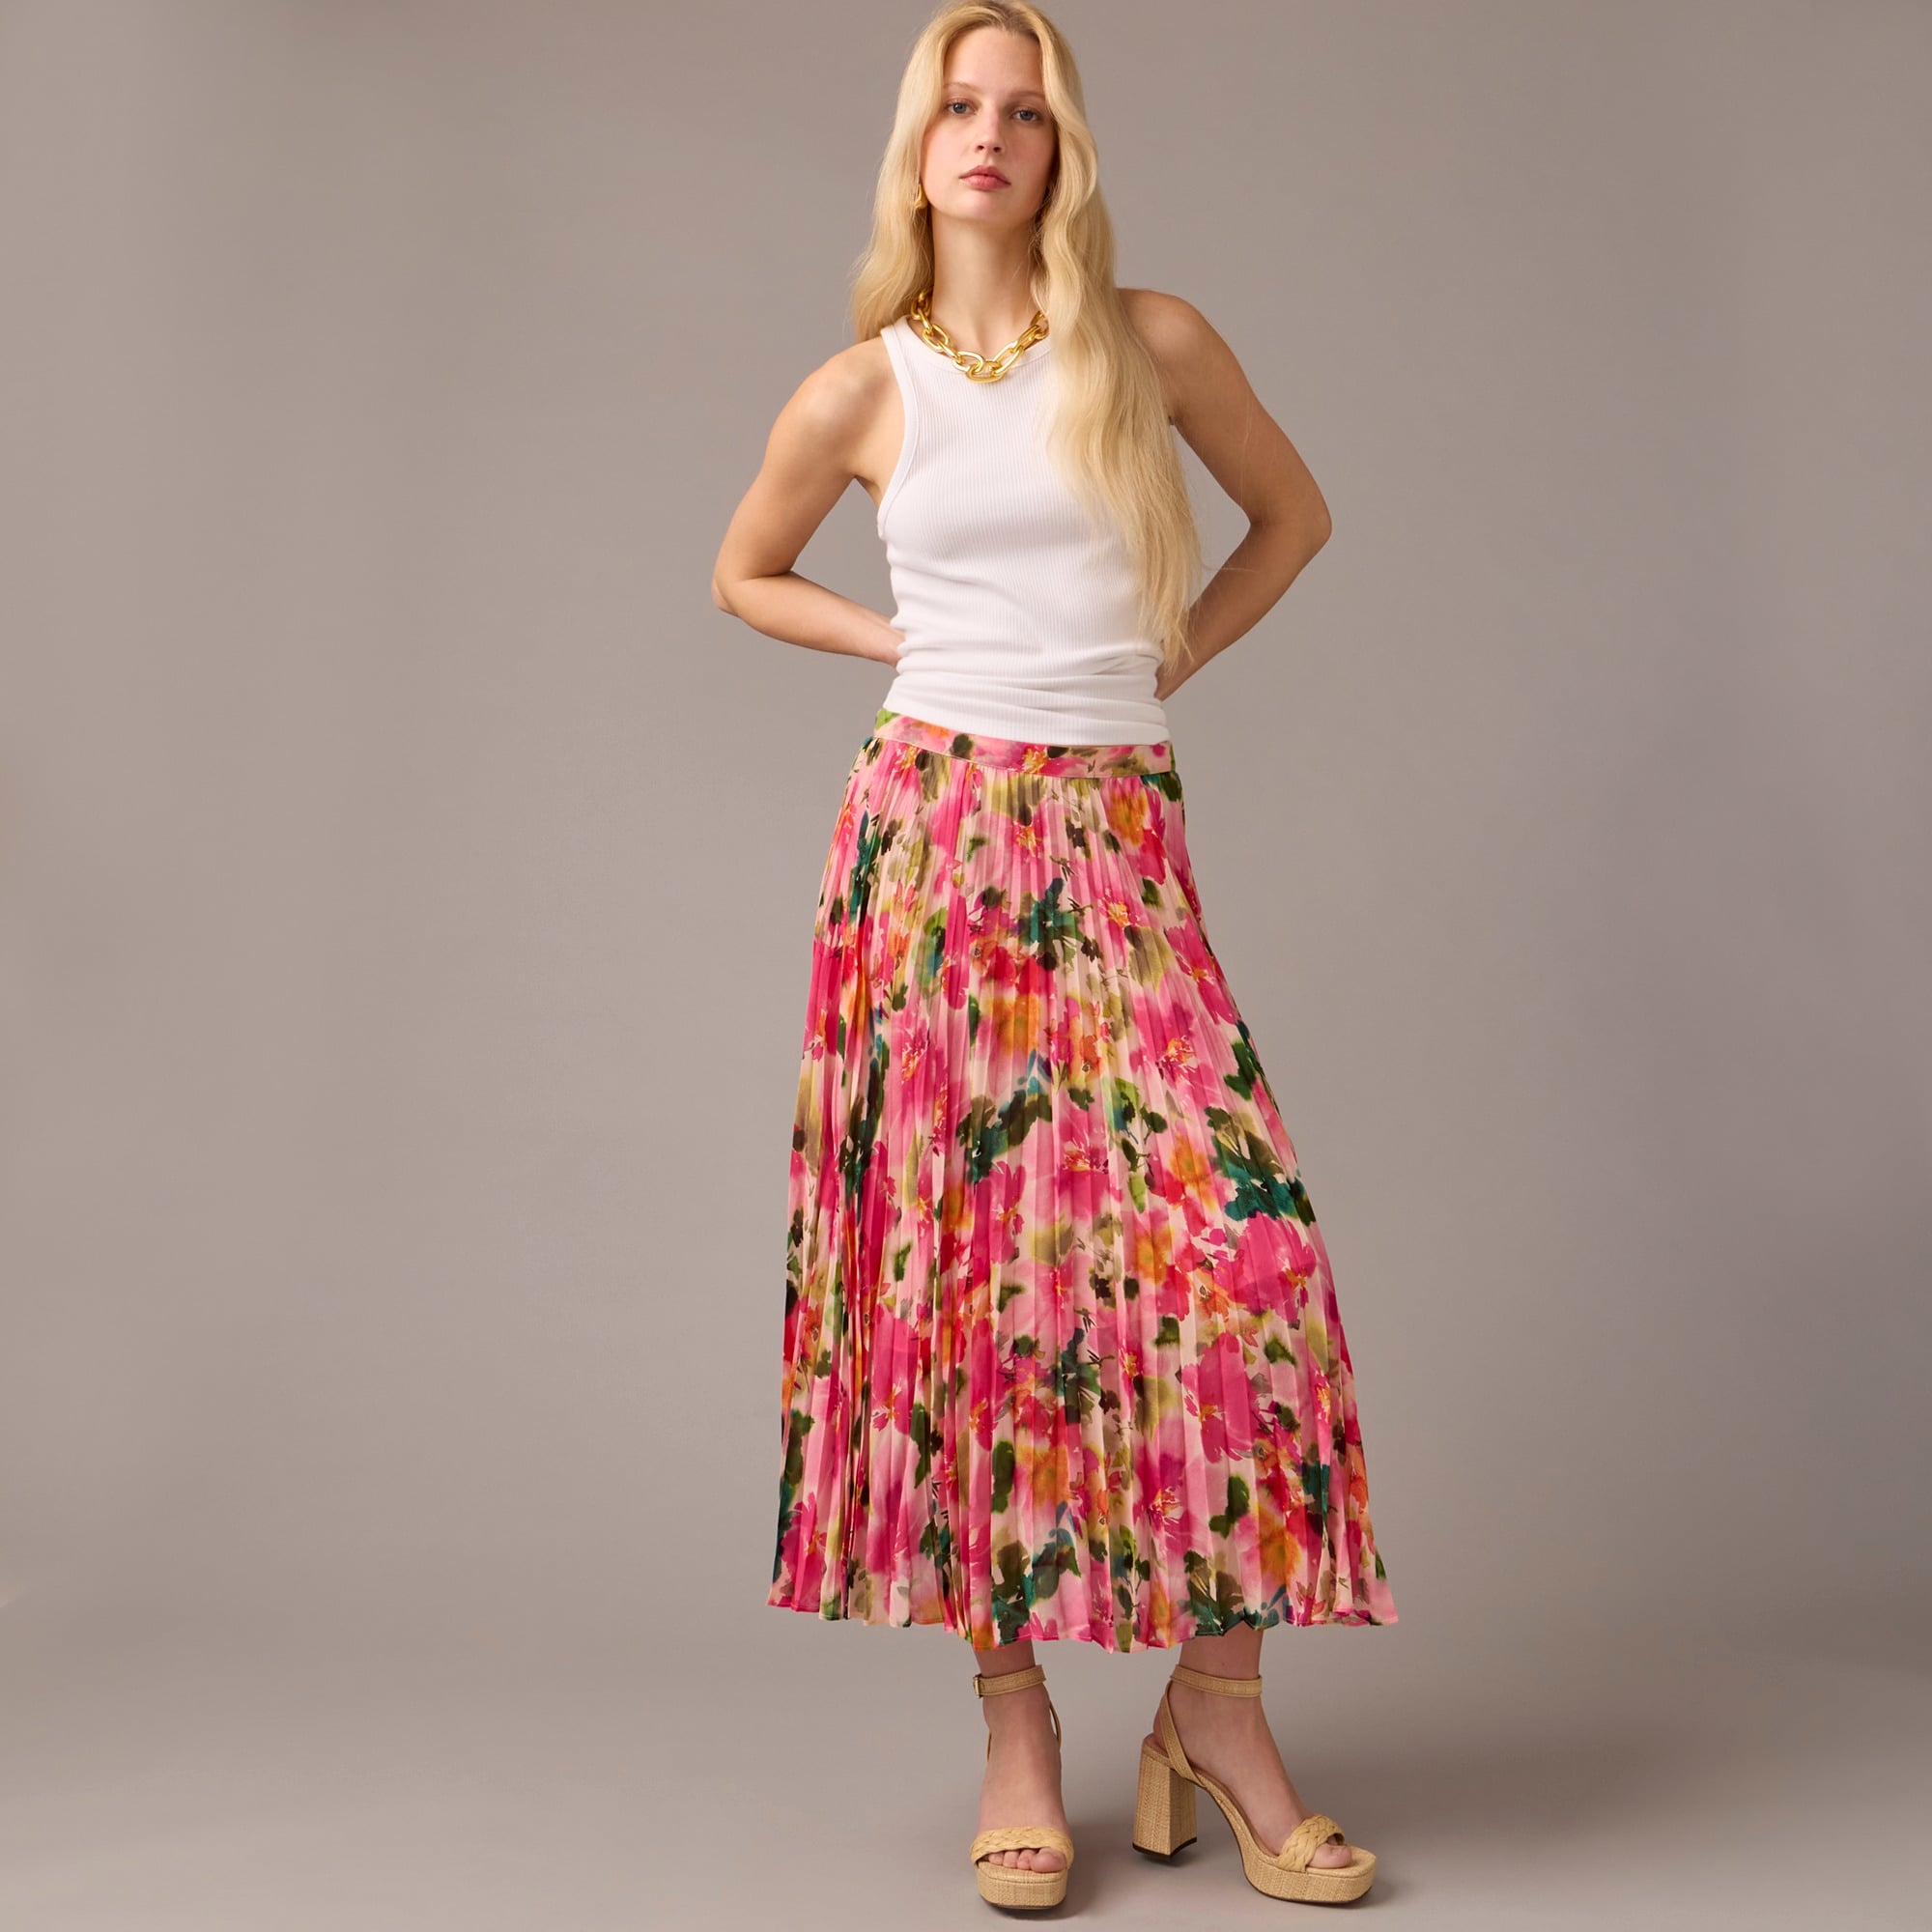  Gwyneth pleated skirt in floral chiffon